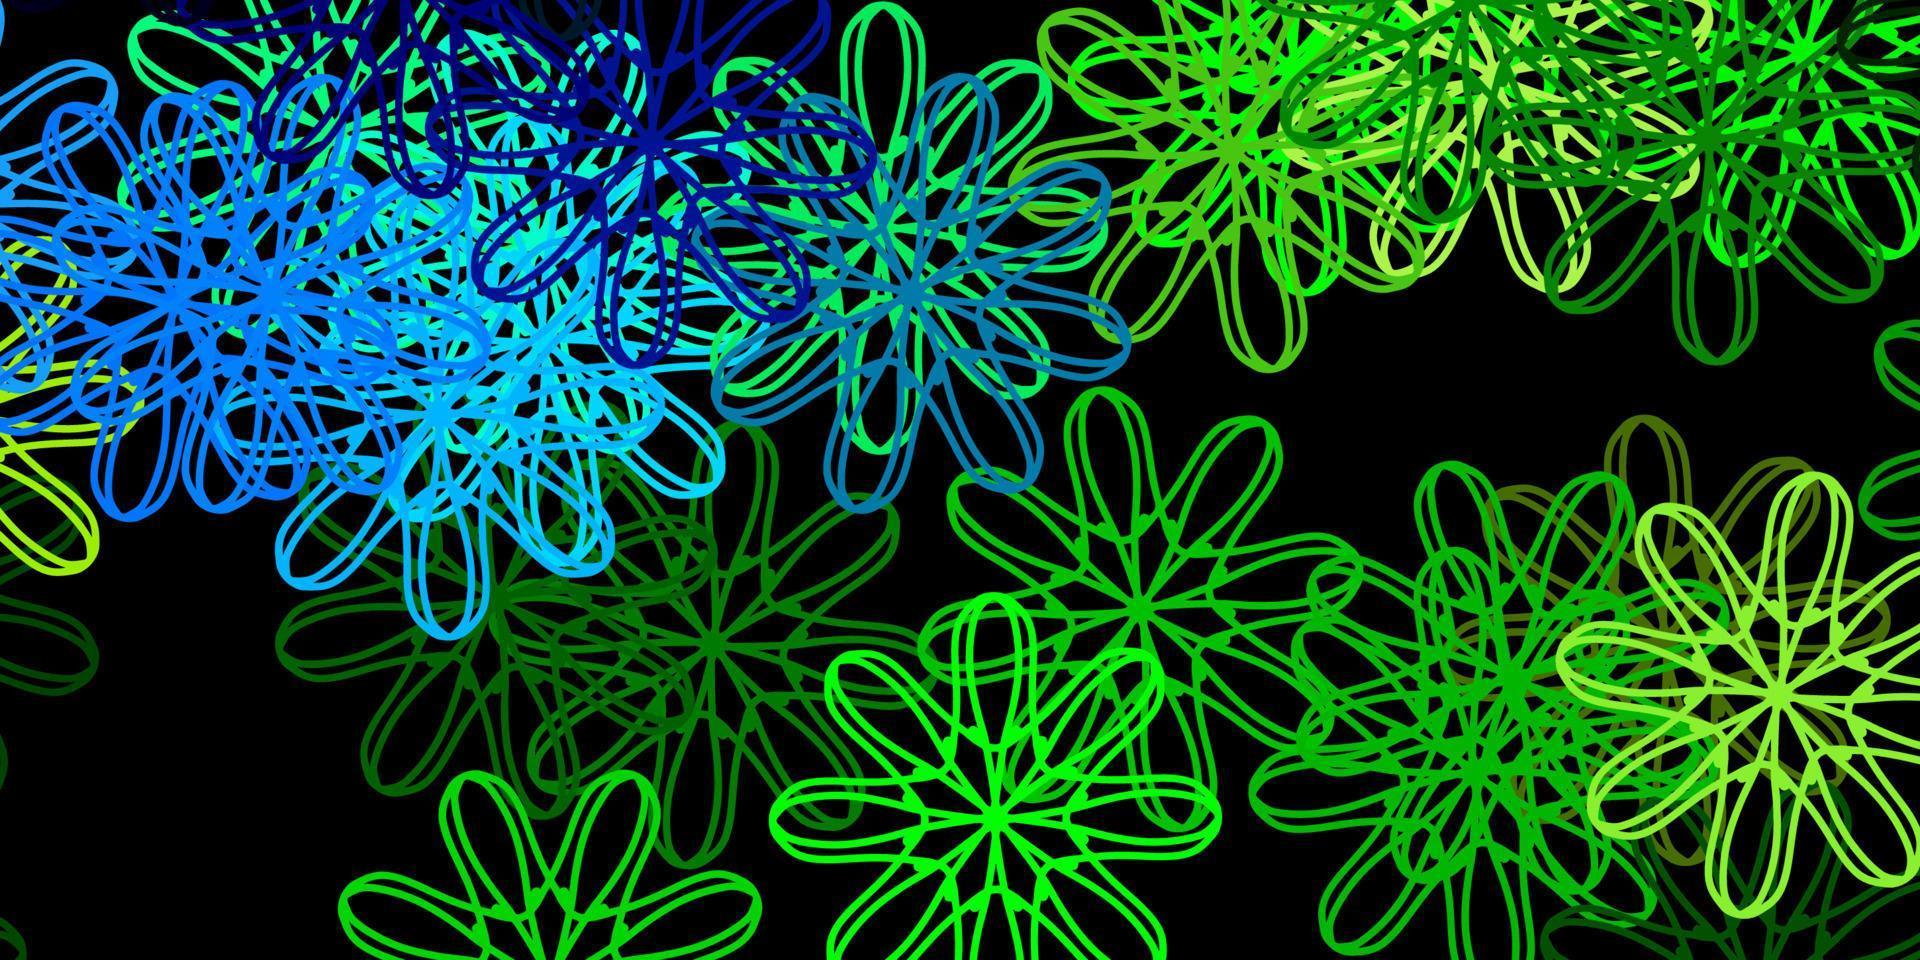 mörkblå, grön vektorstruktur med memphis-former. vektor